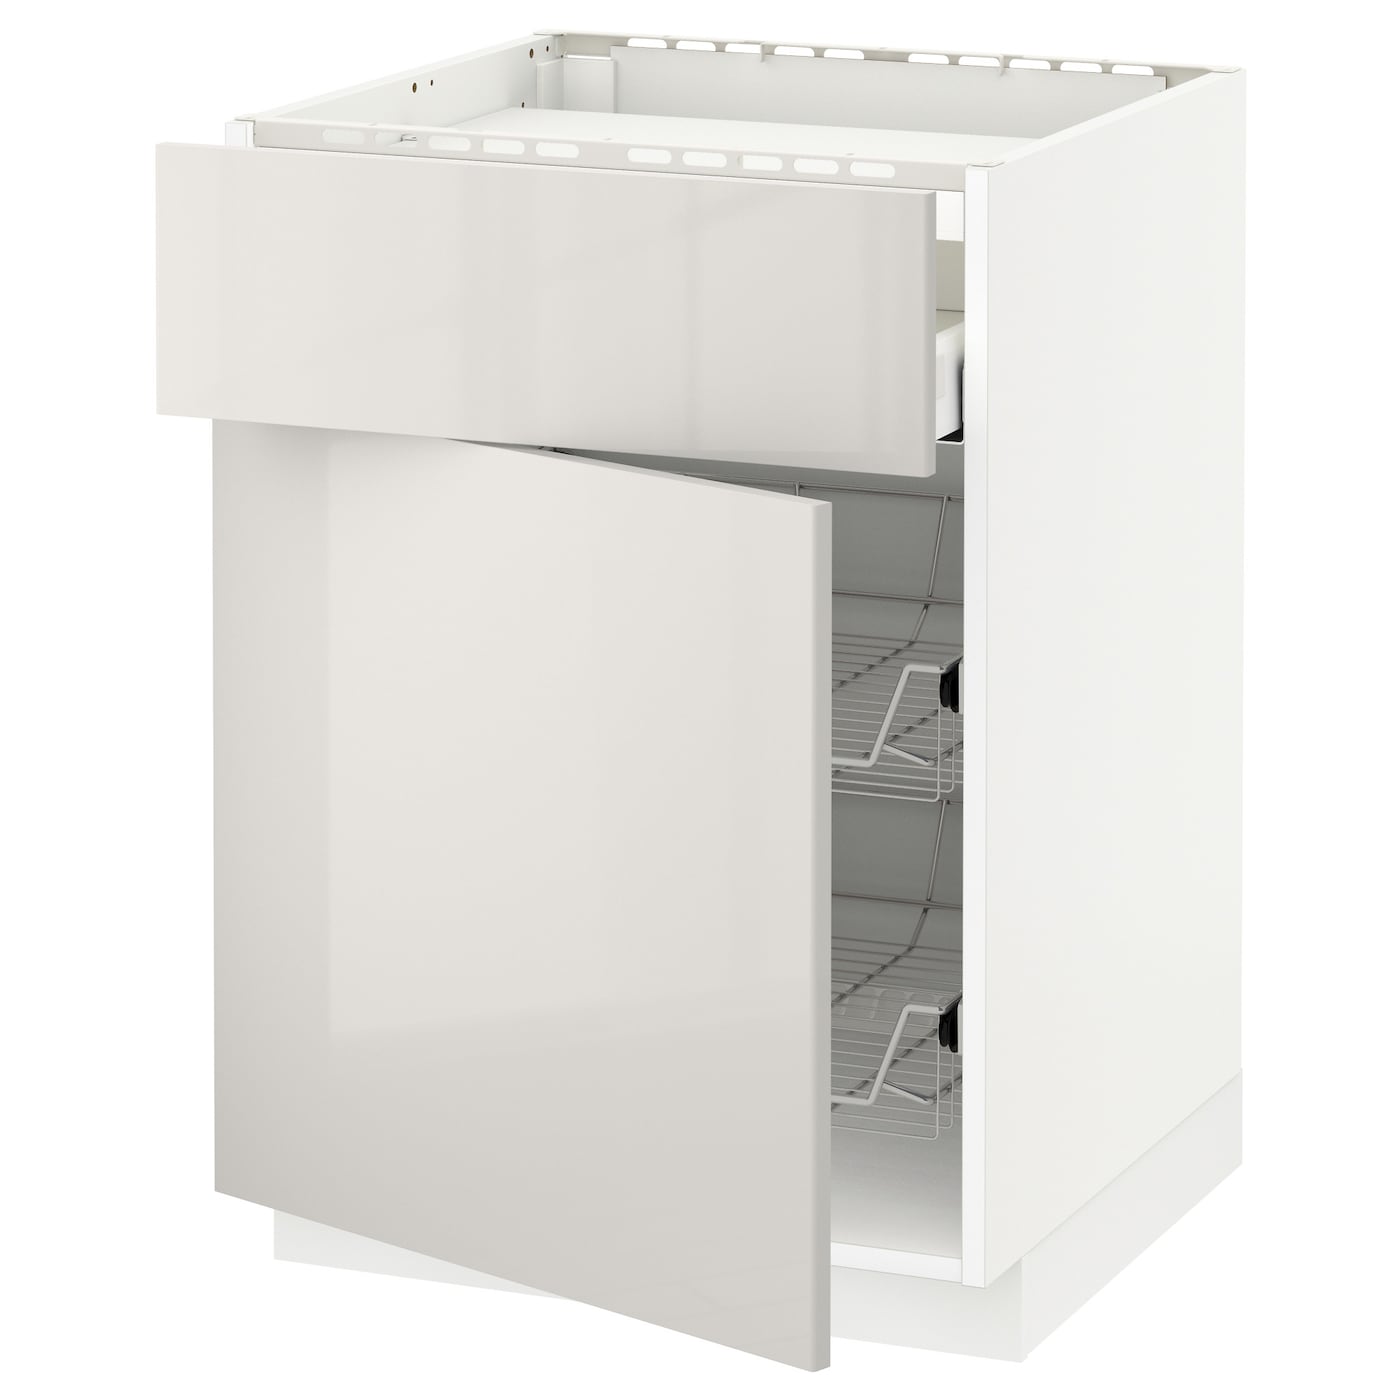 Напольный 23-дверный шкаф  - IKEA METOD MAXIMERA, 88x61,8x60см, светло-серый, МЕТОД МАКСИМЕРА ИКЕА